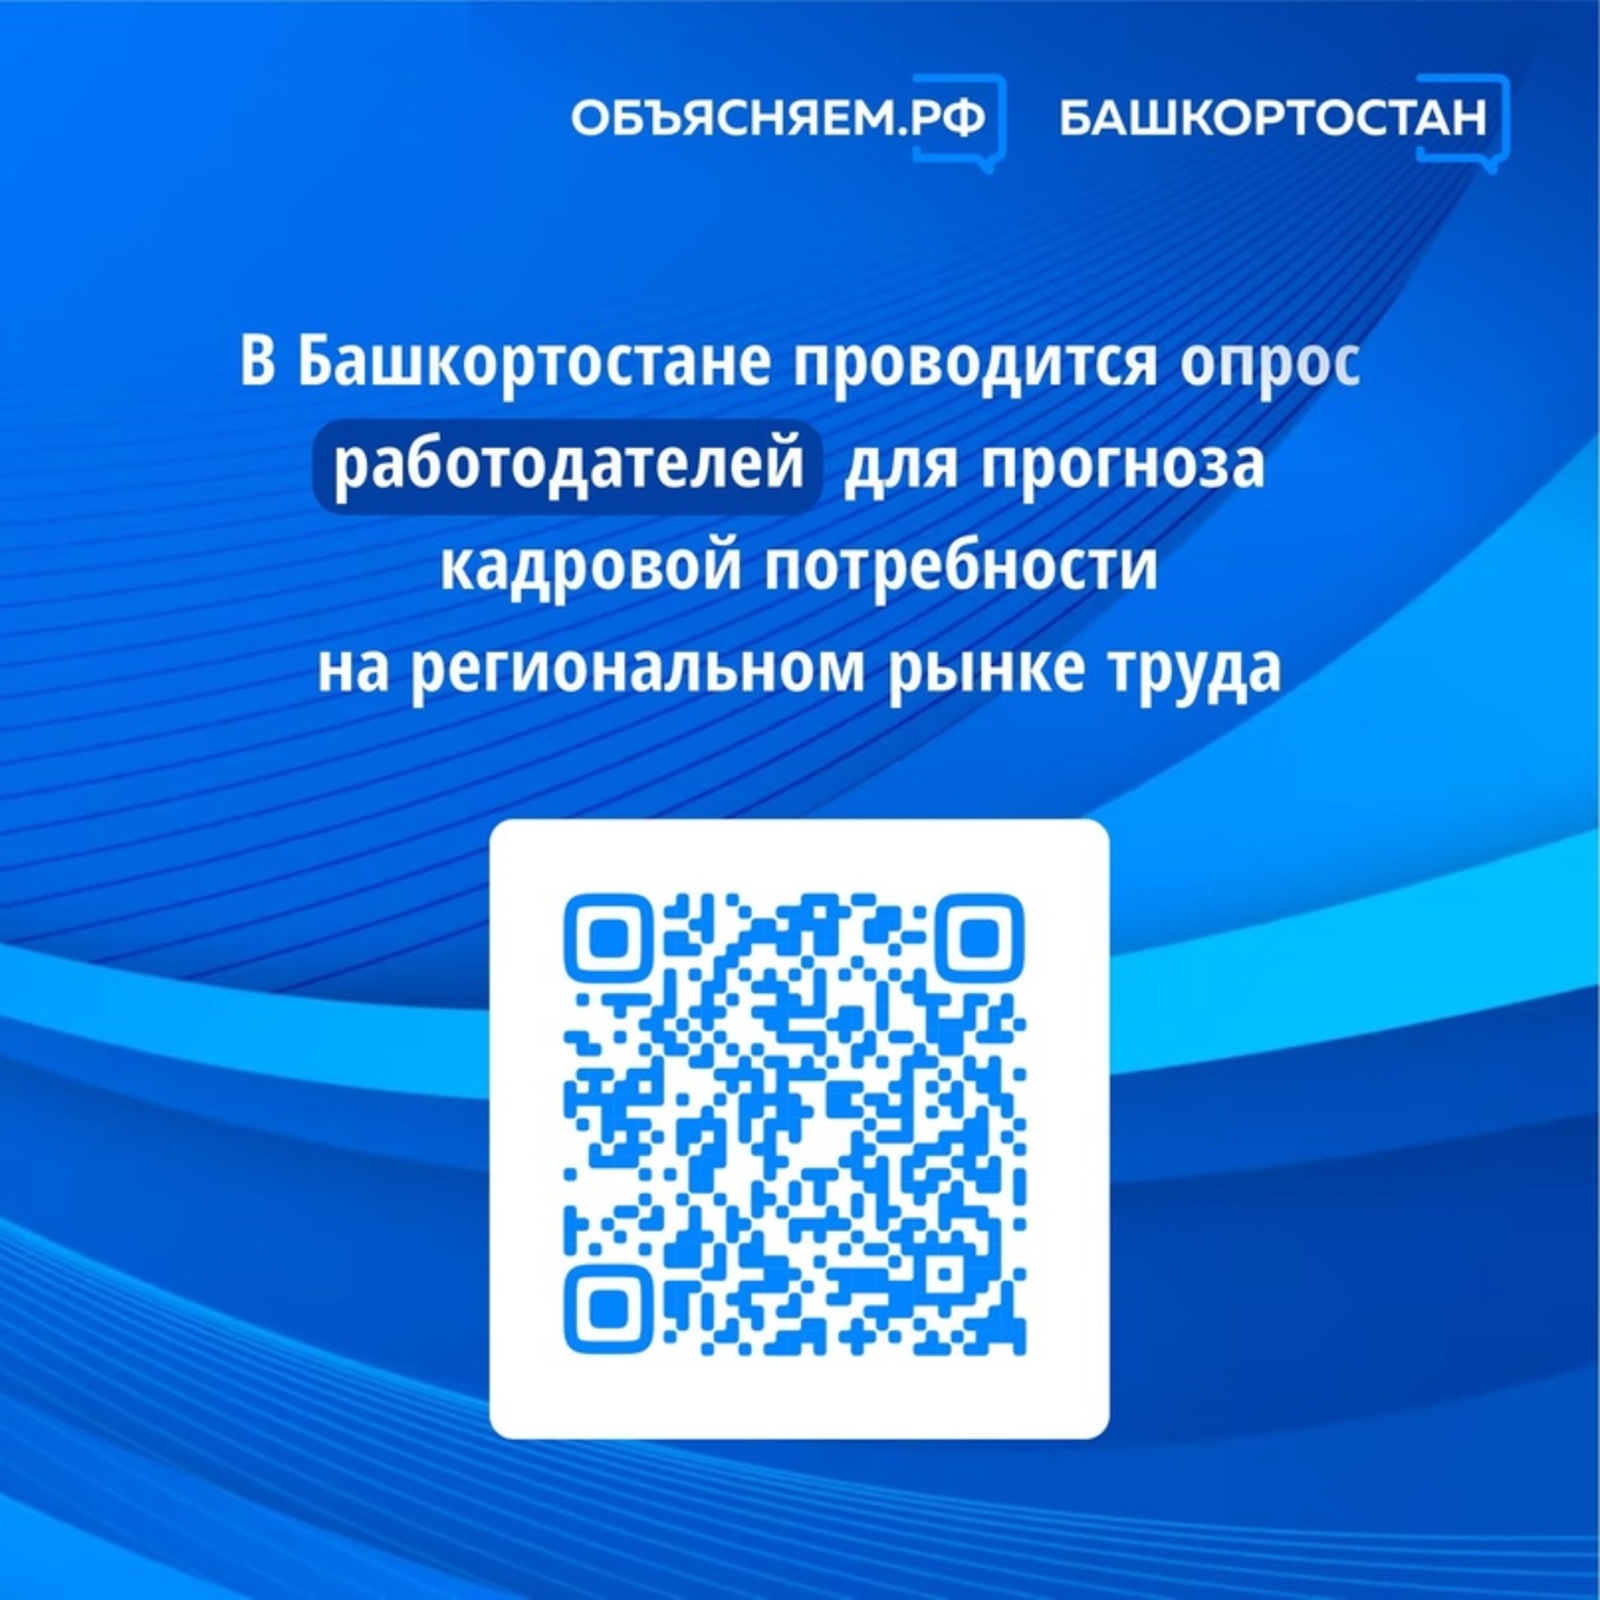 В Башкортостане проводится опрос работодателей для прогноза кадровой потребности